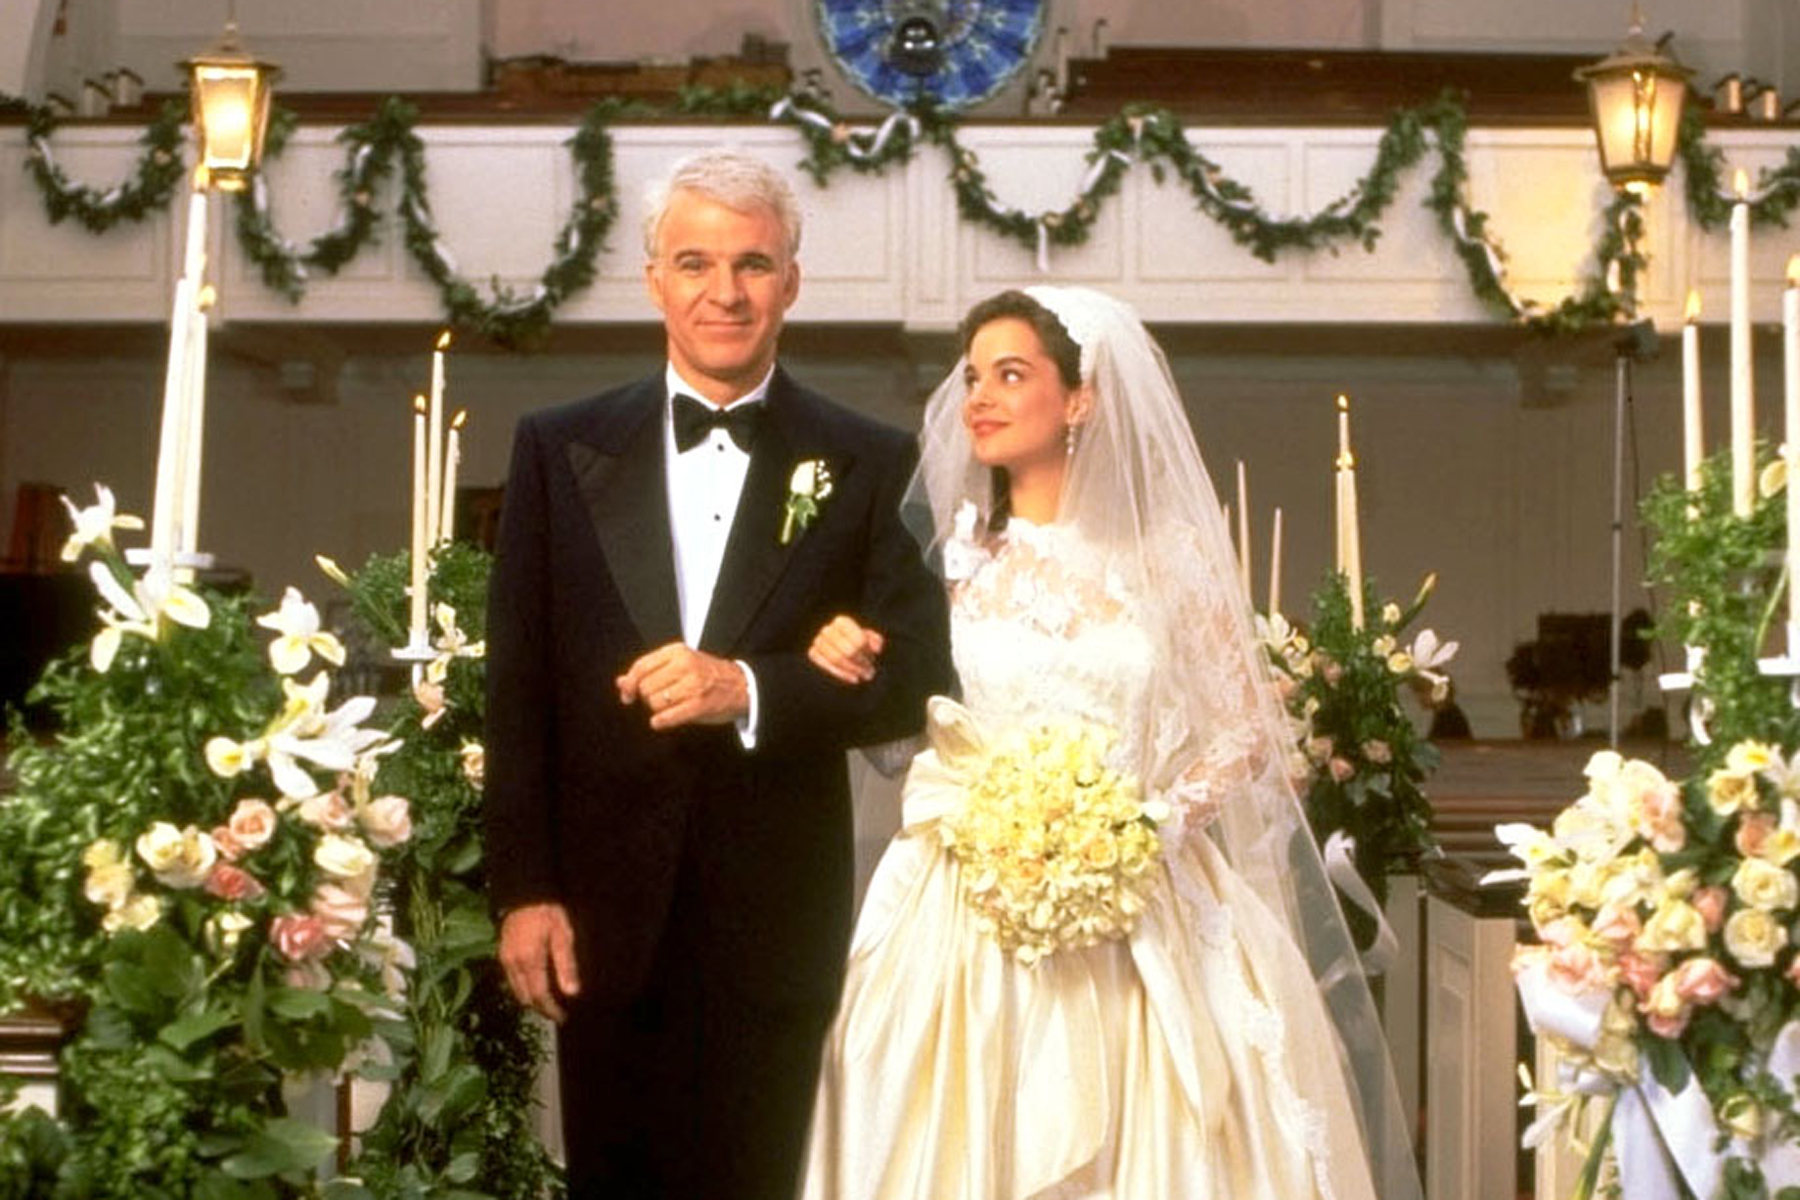 دانلود فیلم Father of the Bride 1991